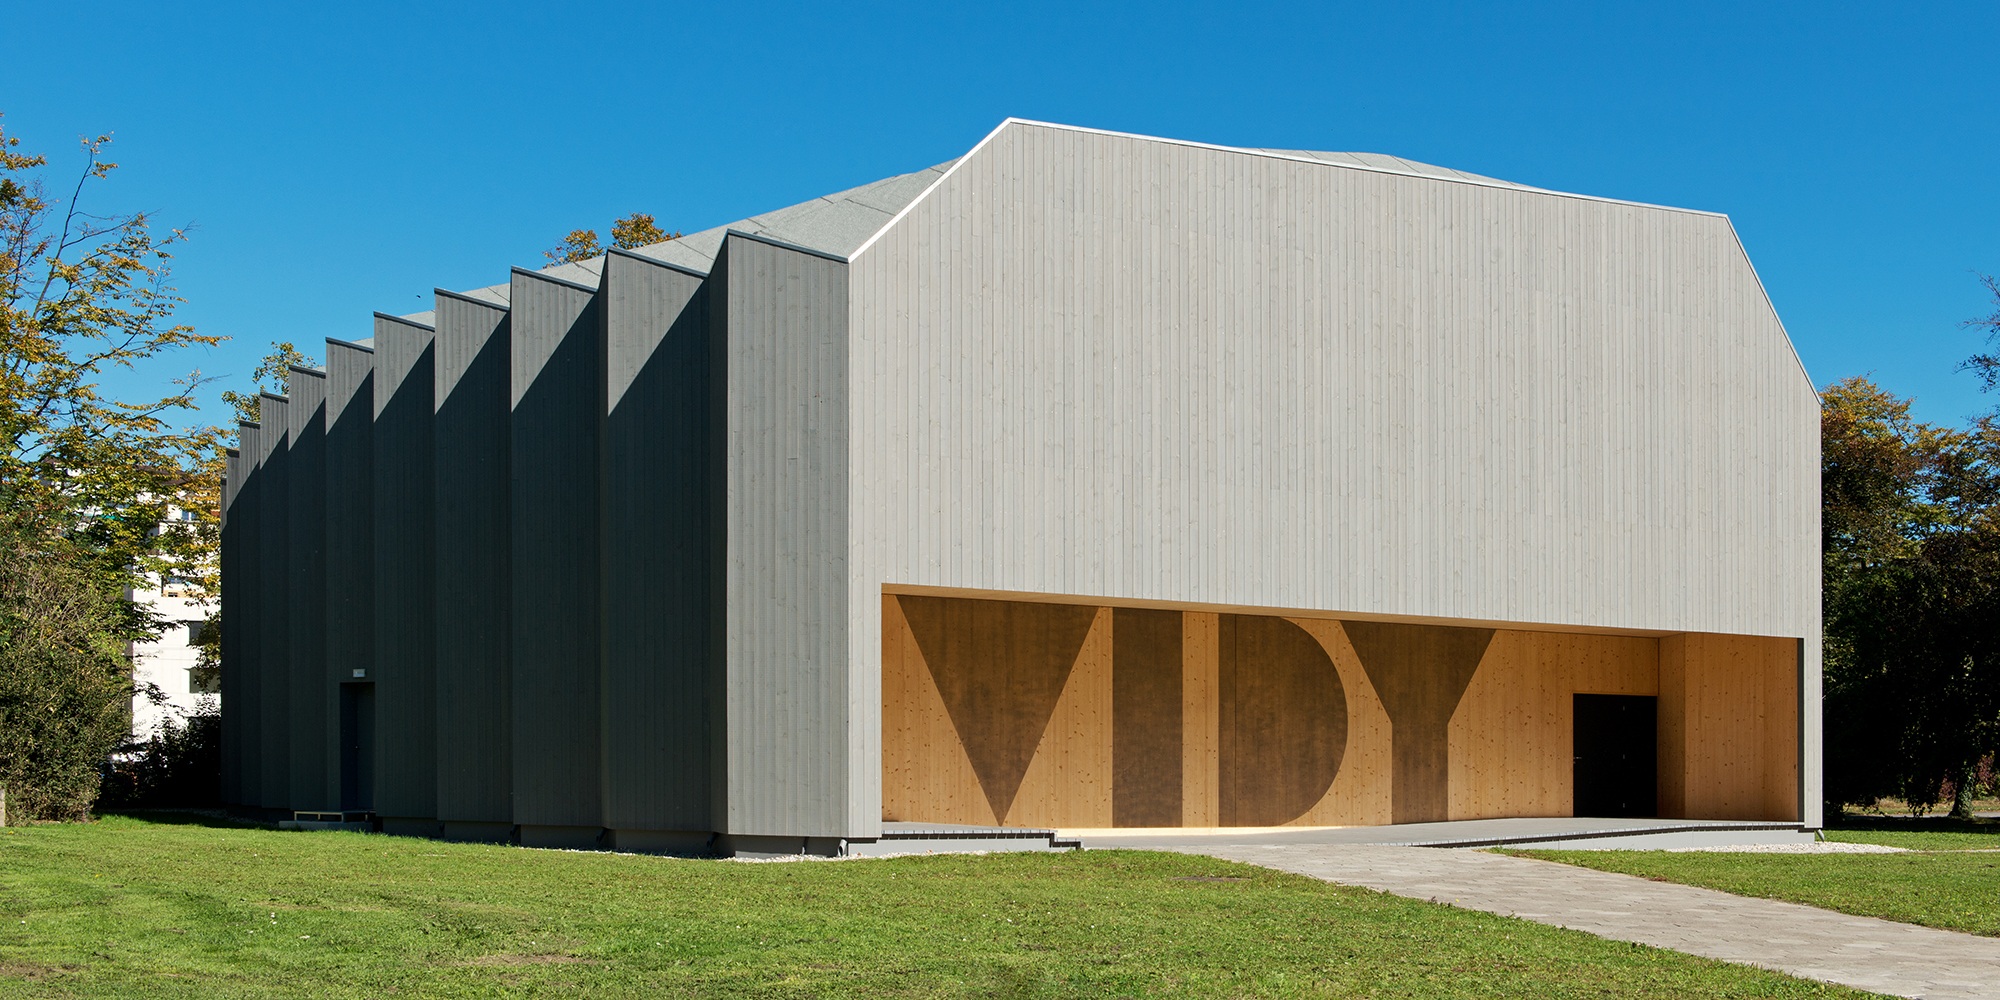 La construction spéciale du Théâtre de Vidy à Lausanne fait penser à un pliage d’origami en bois.